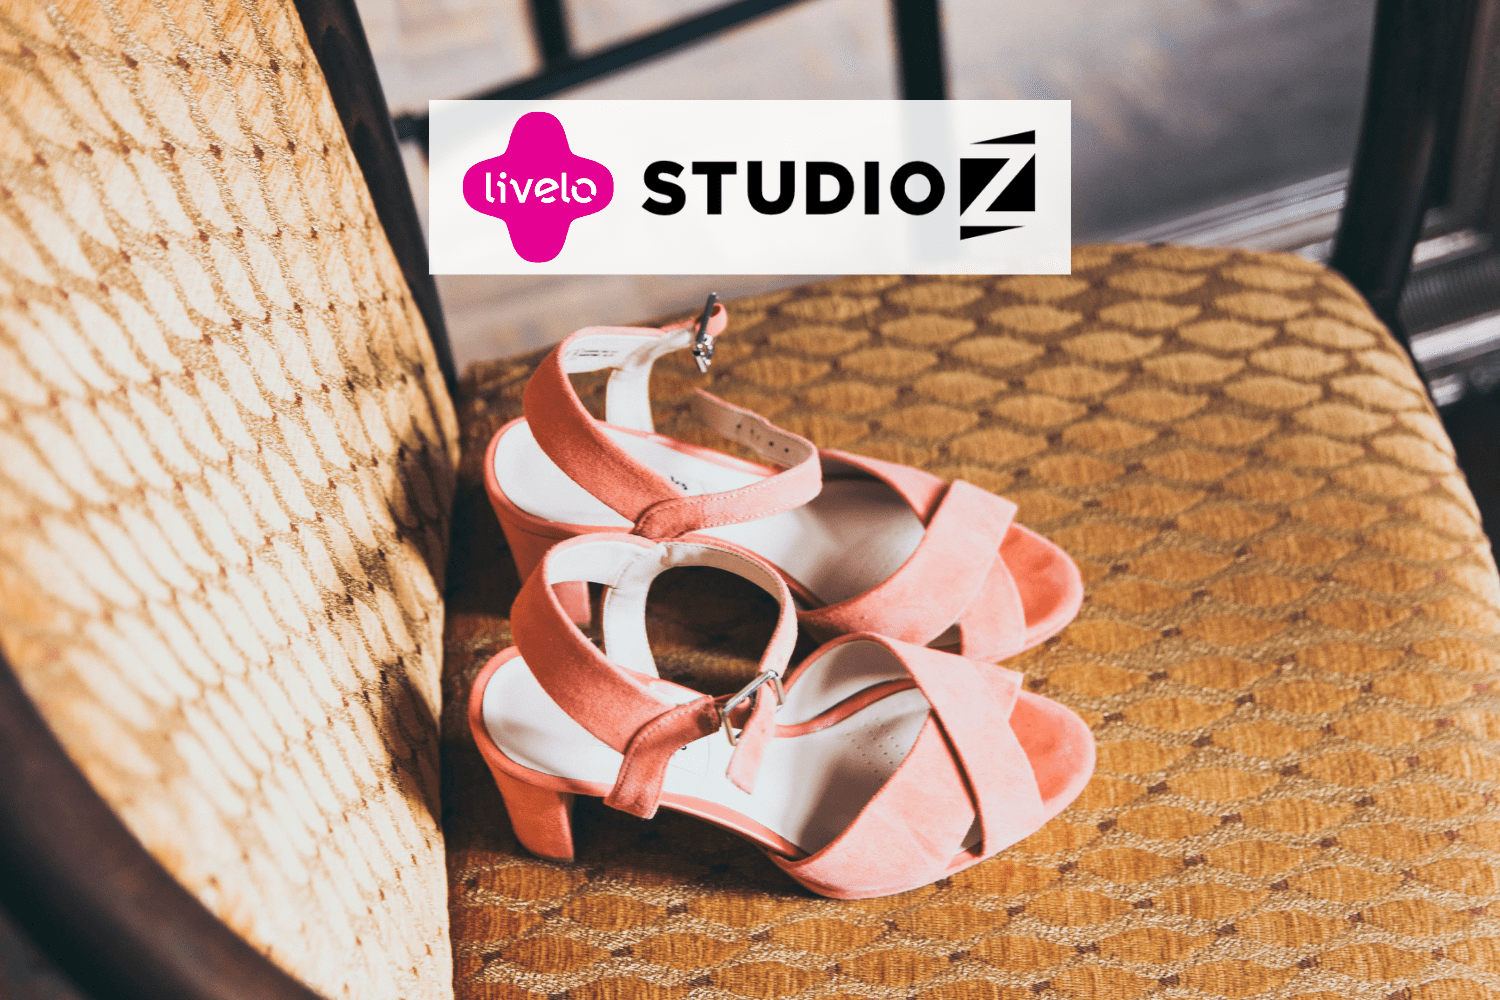 sapato rosa com logo Livelo e Studio Z 6 pontos Livelo